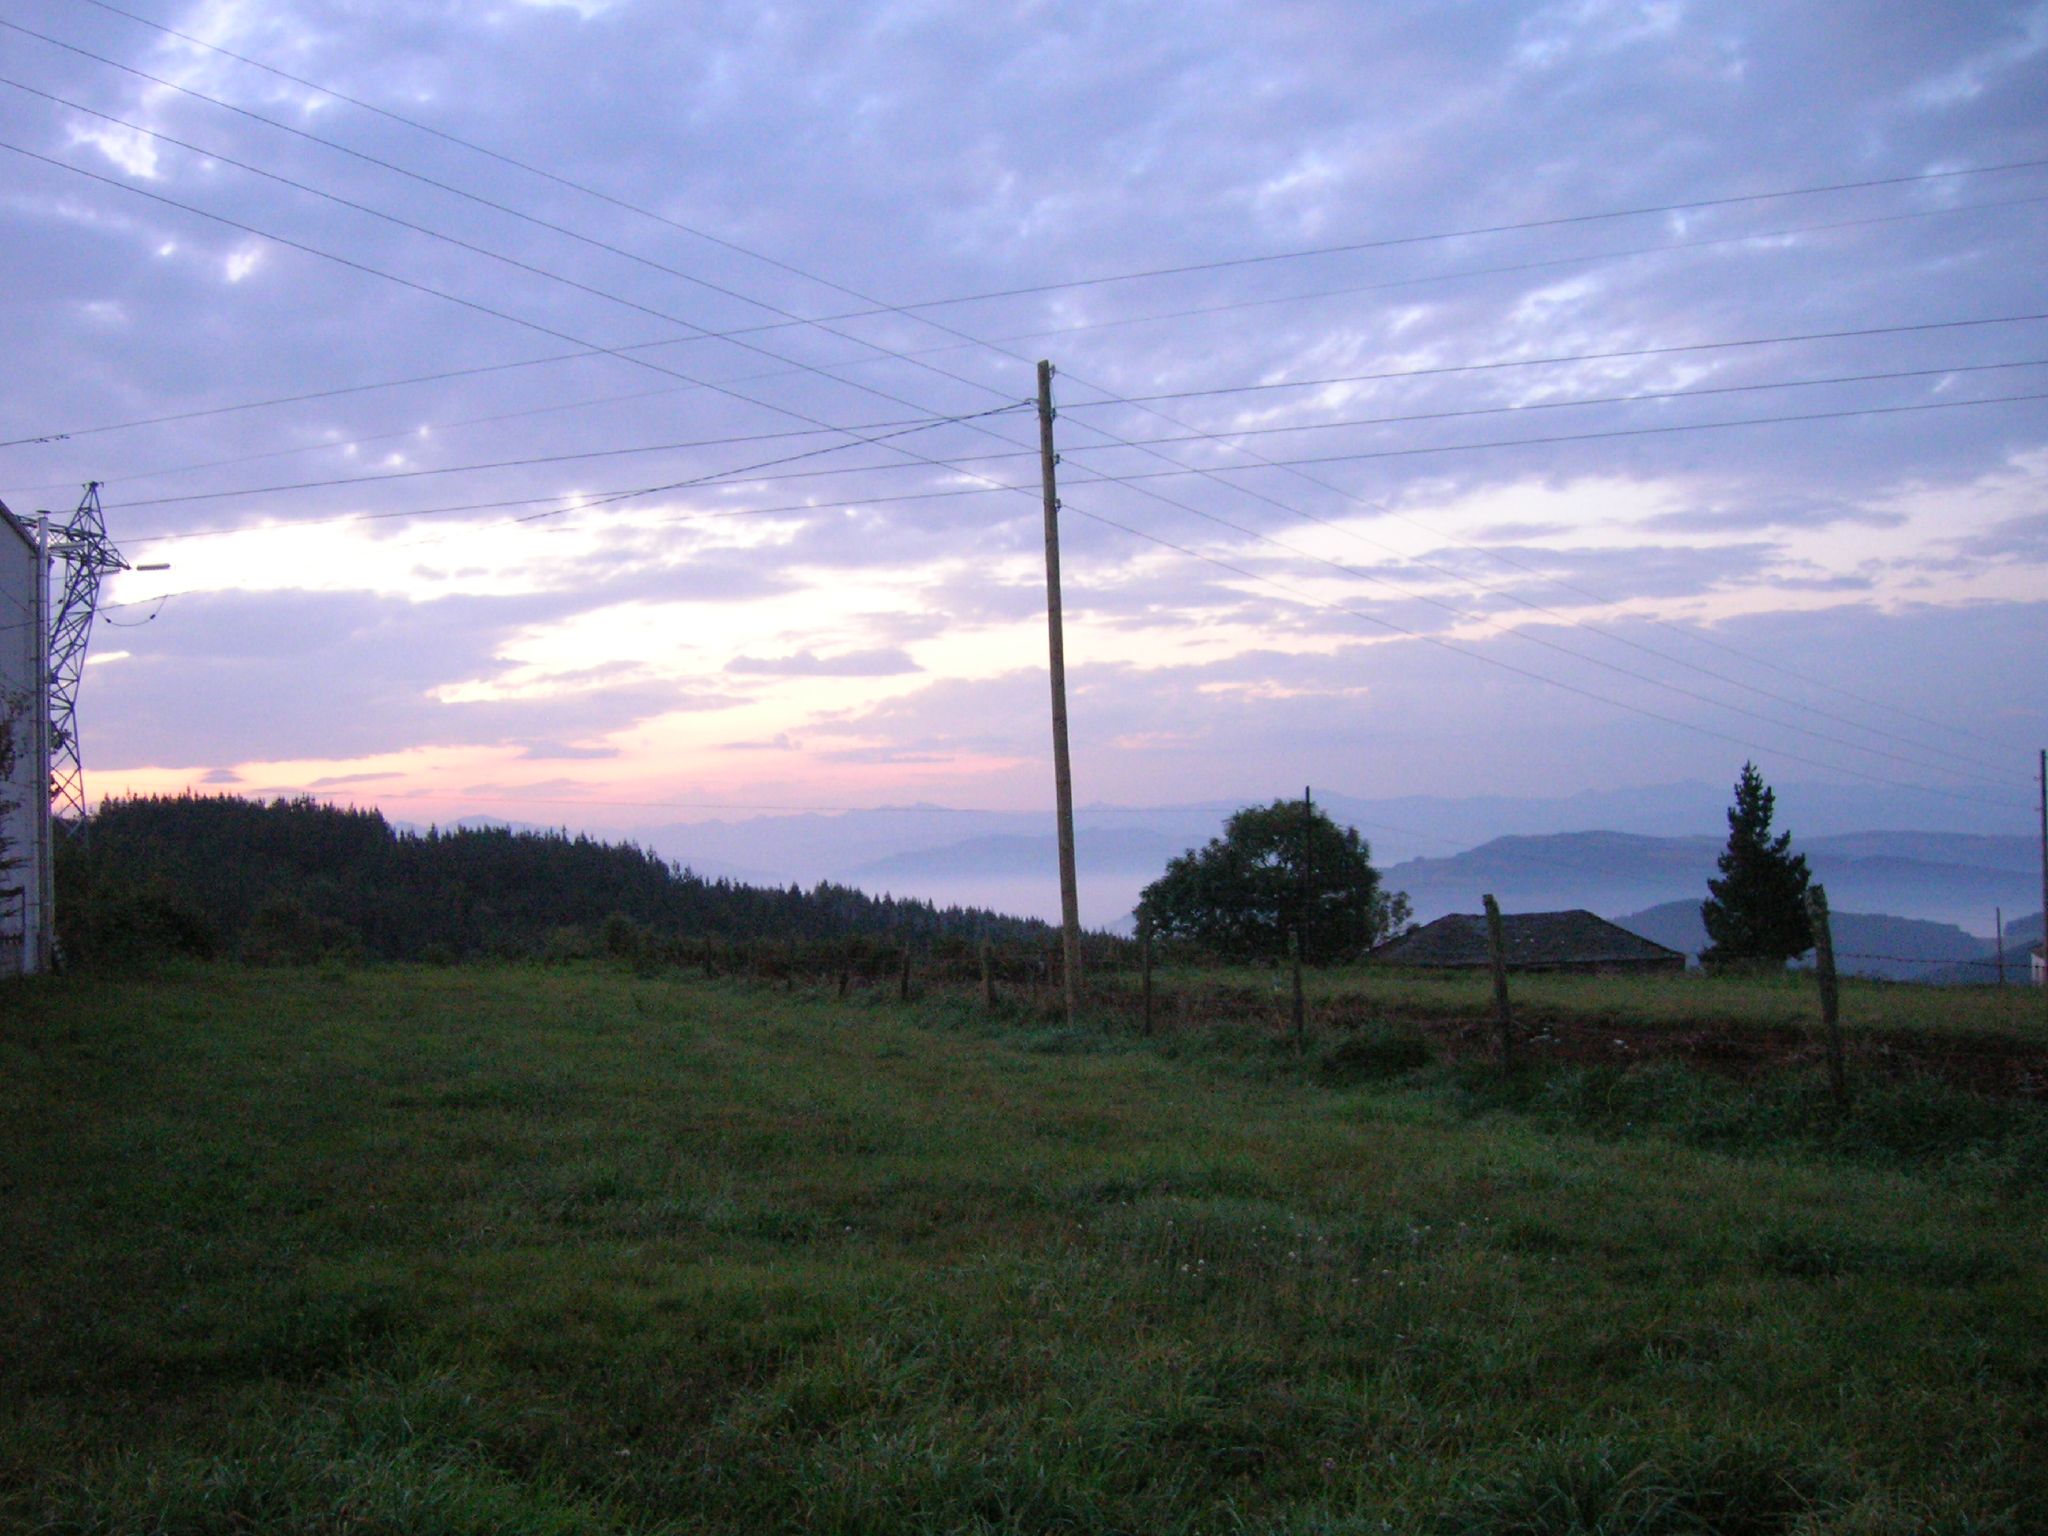 an empty field near a power pole on a hill